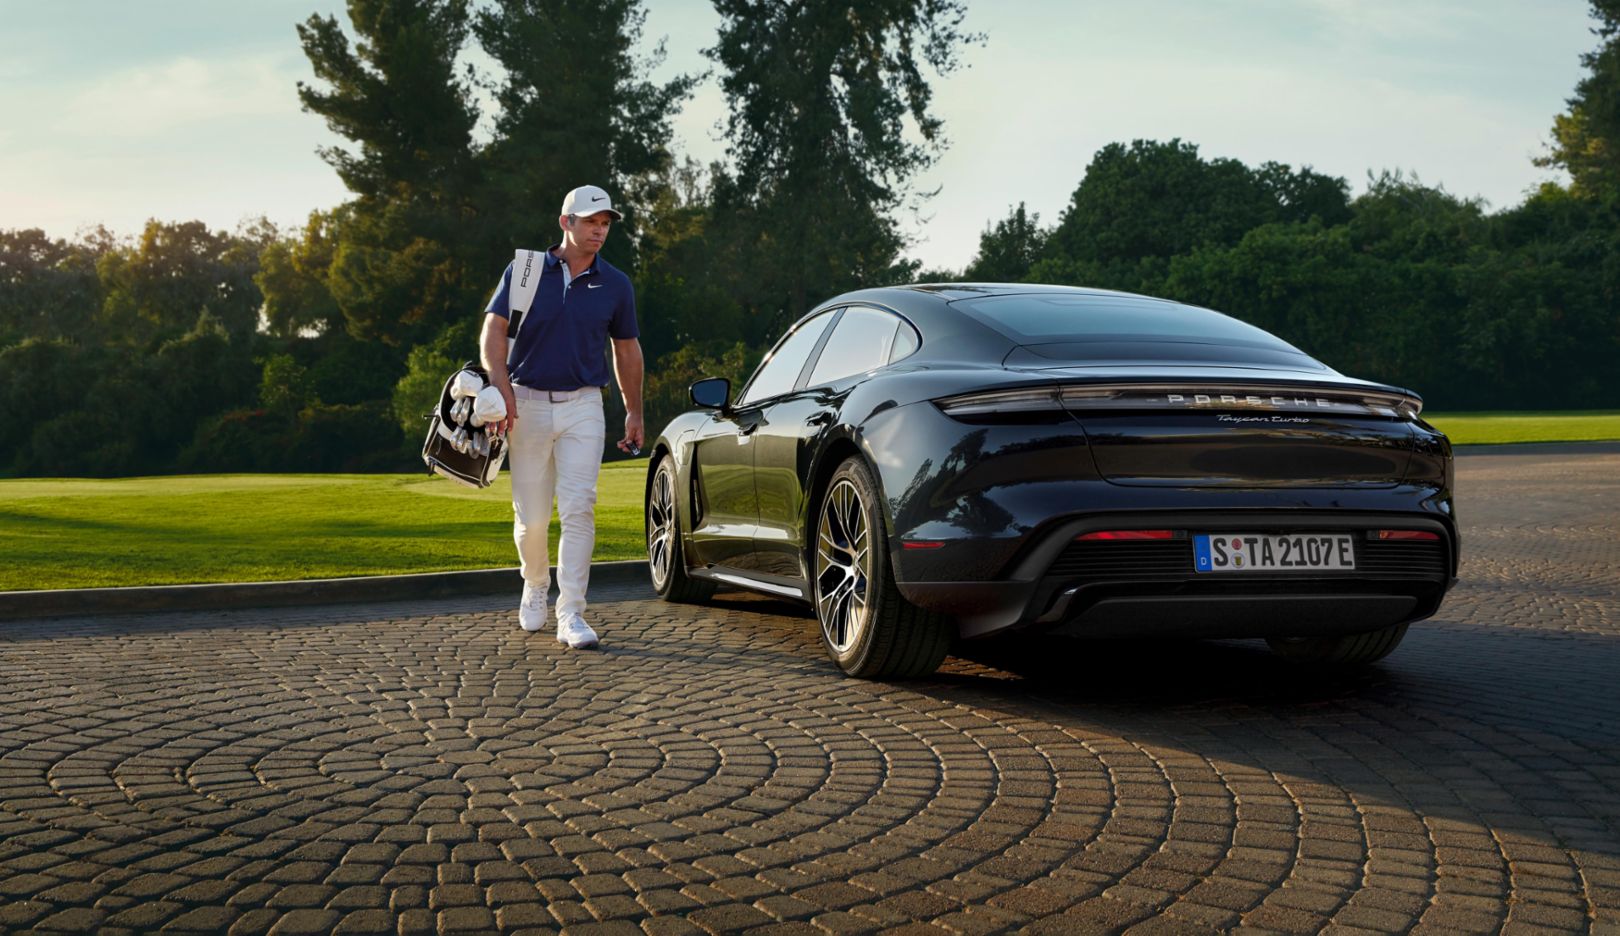 World class golfer Paul Casey becomes a Porsche Brand Ambassador